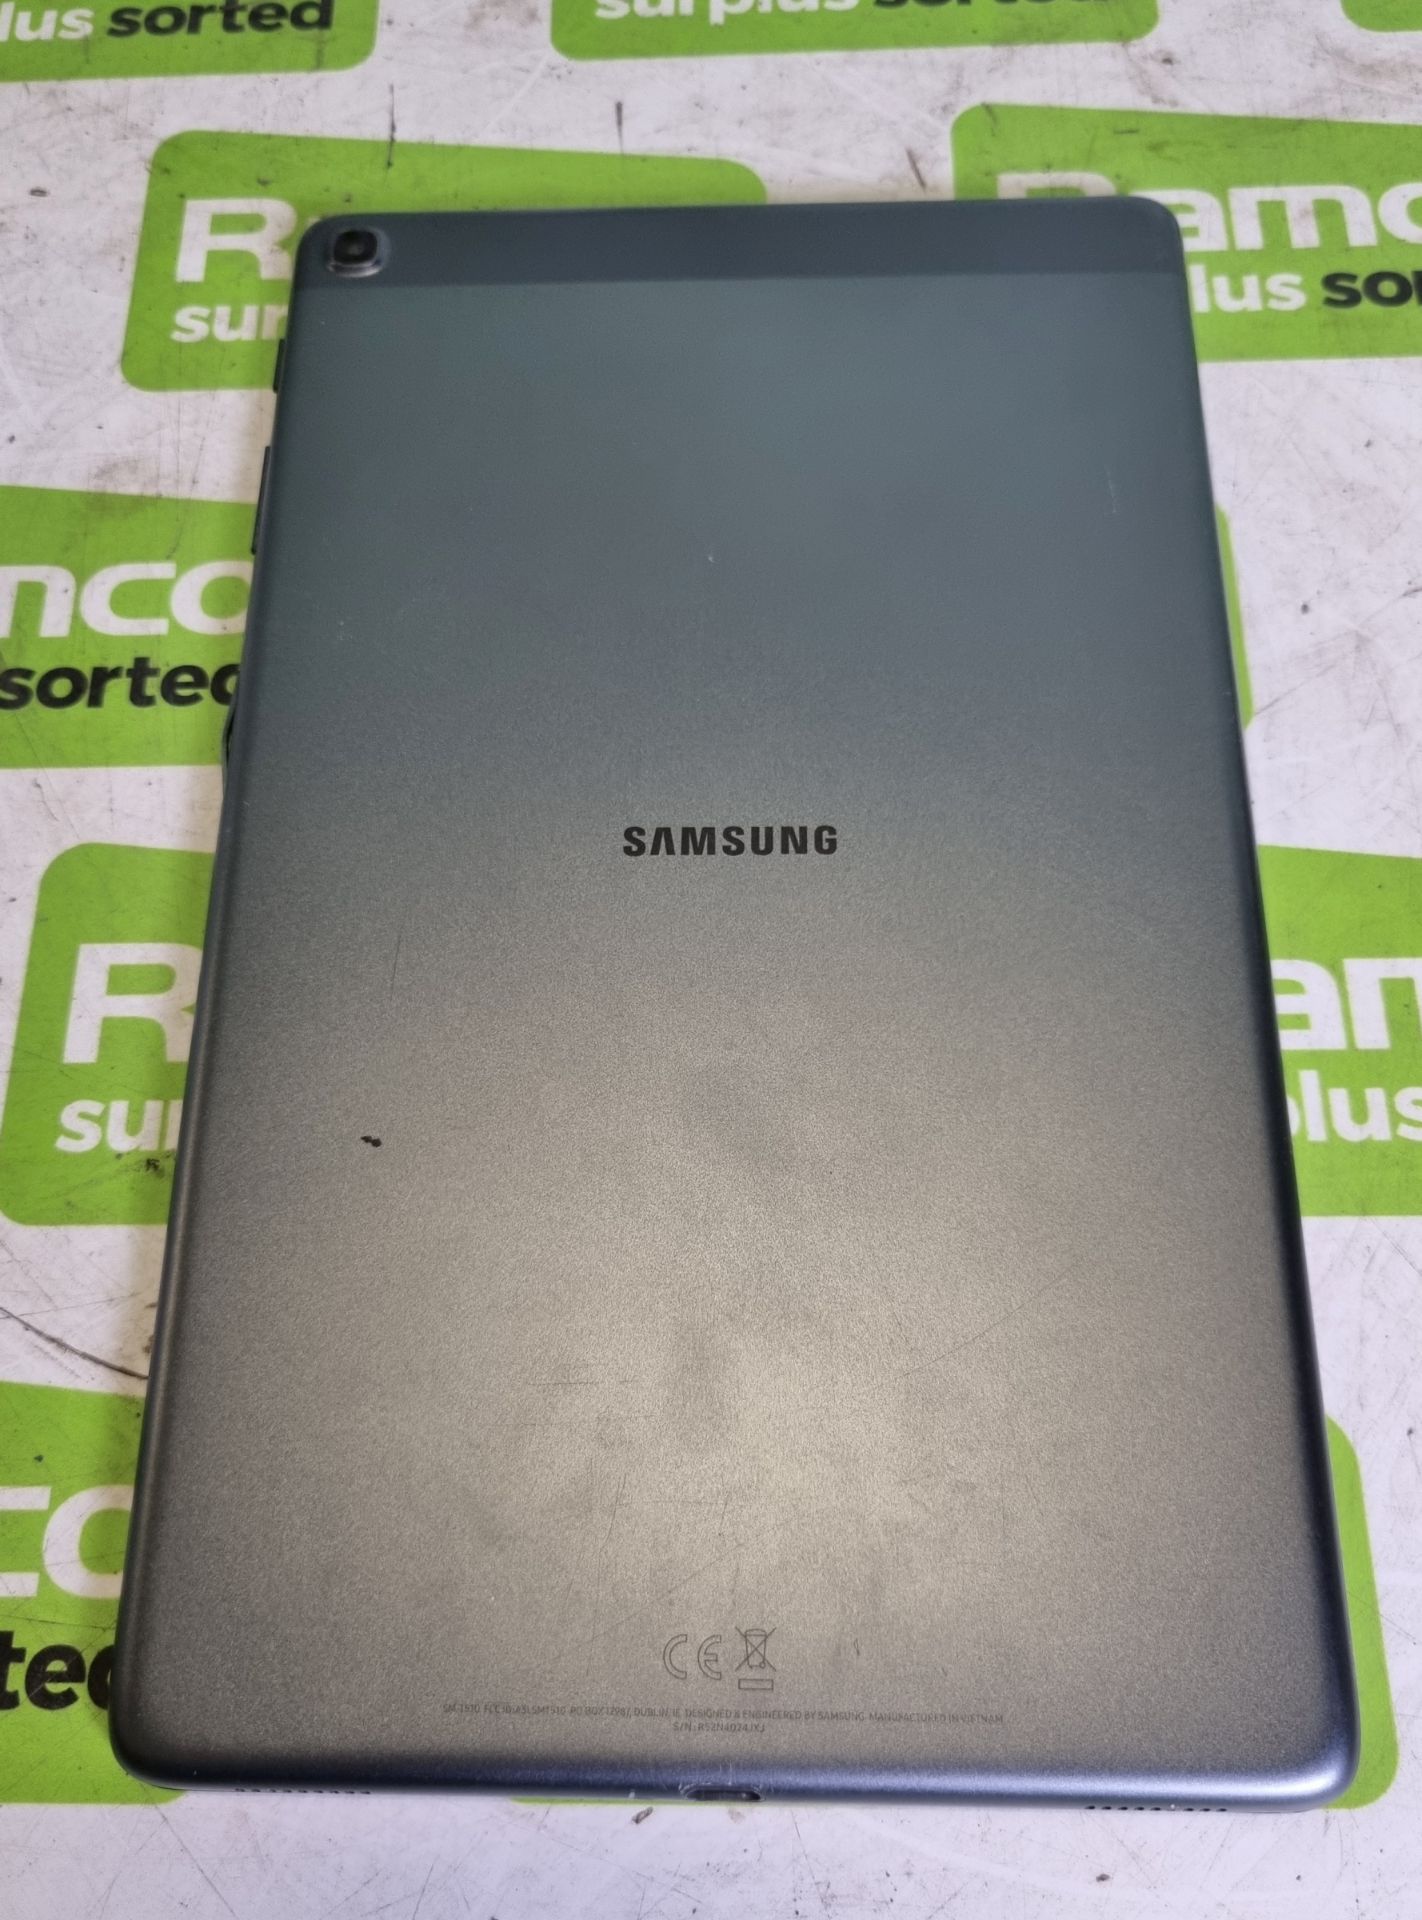 Samsung Galaxy Tab A SM-T510, 10.1 inchTablet, Wifi, 32GB, 2GB RAM, 8MP AF + 5MP, Black - Image 2 of 4